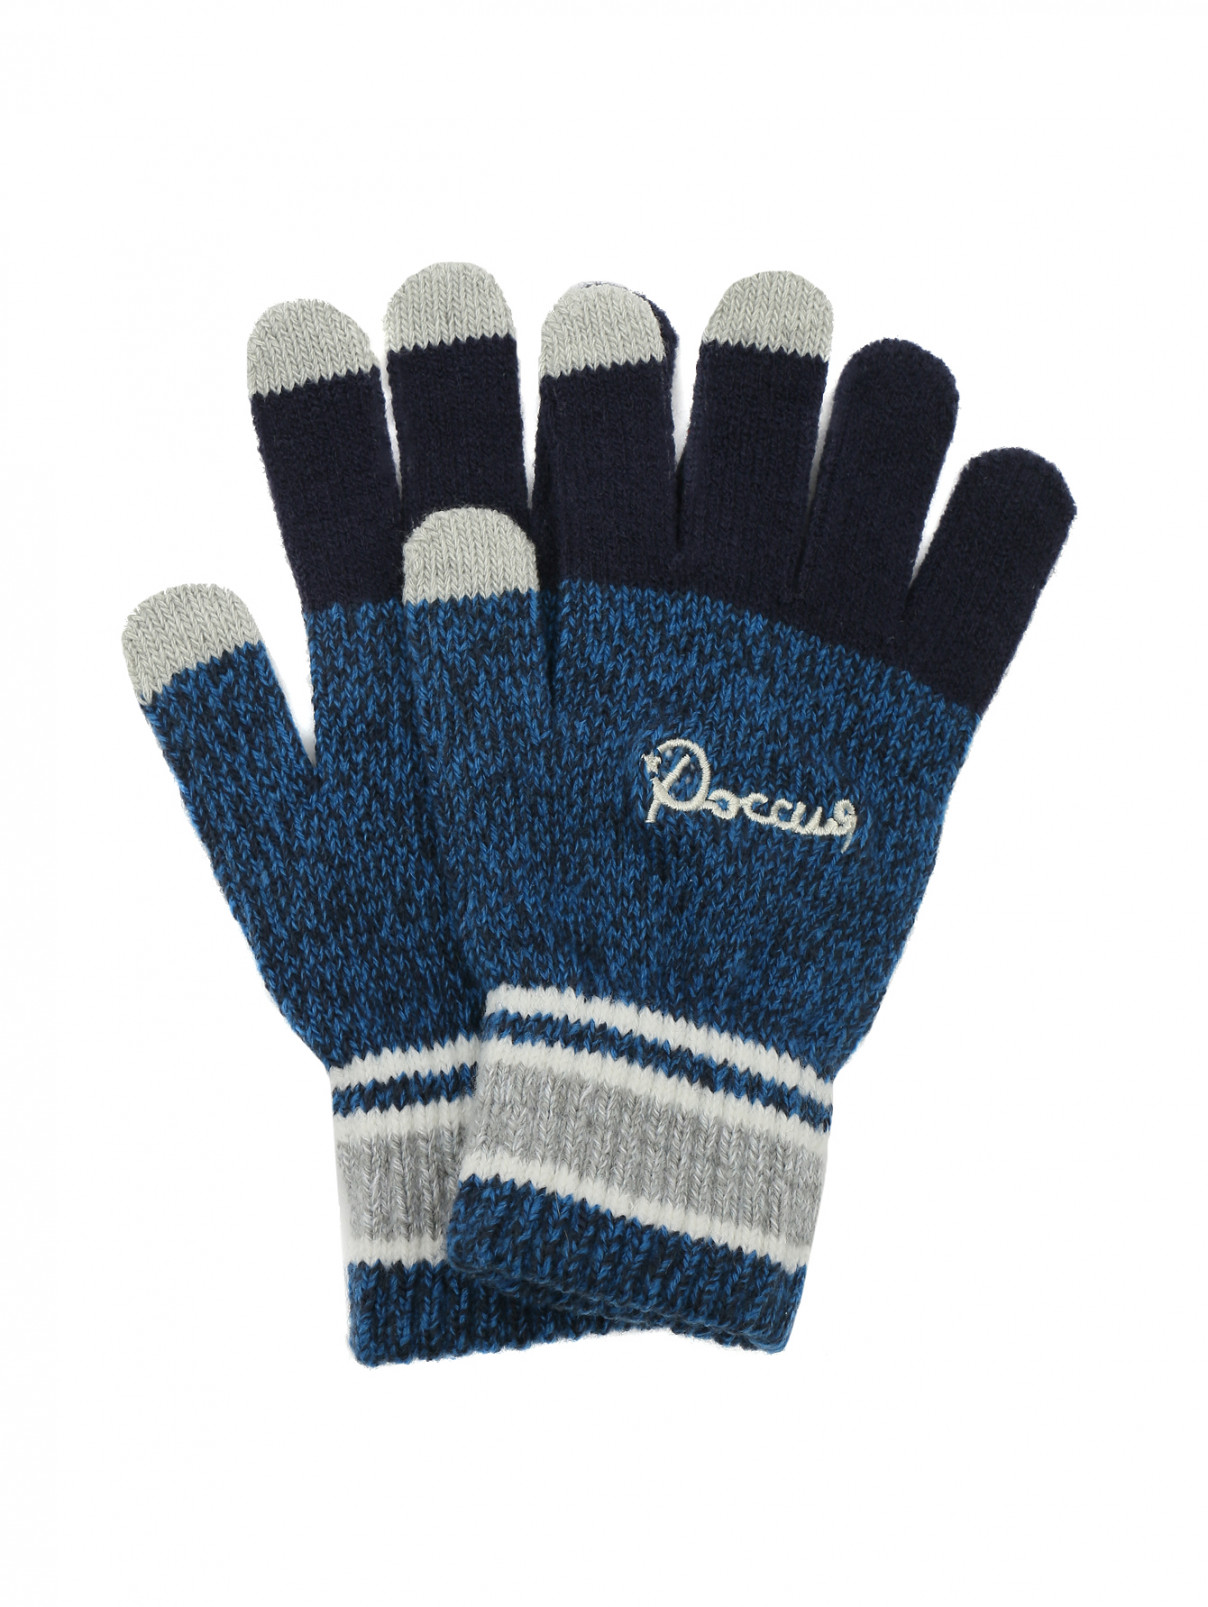 Перчатки с контрастной вставкой BOSCO  –  Общий вид  – Цвет:  Синий